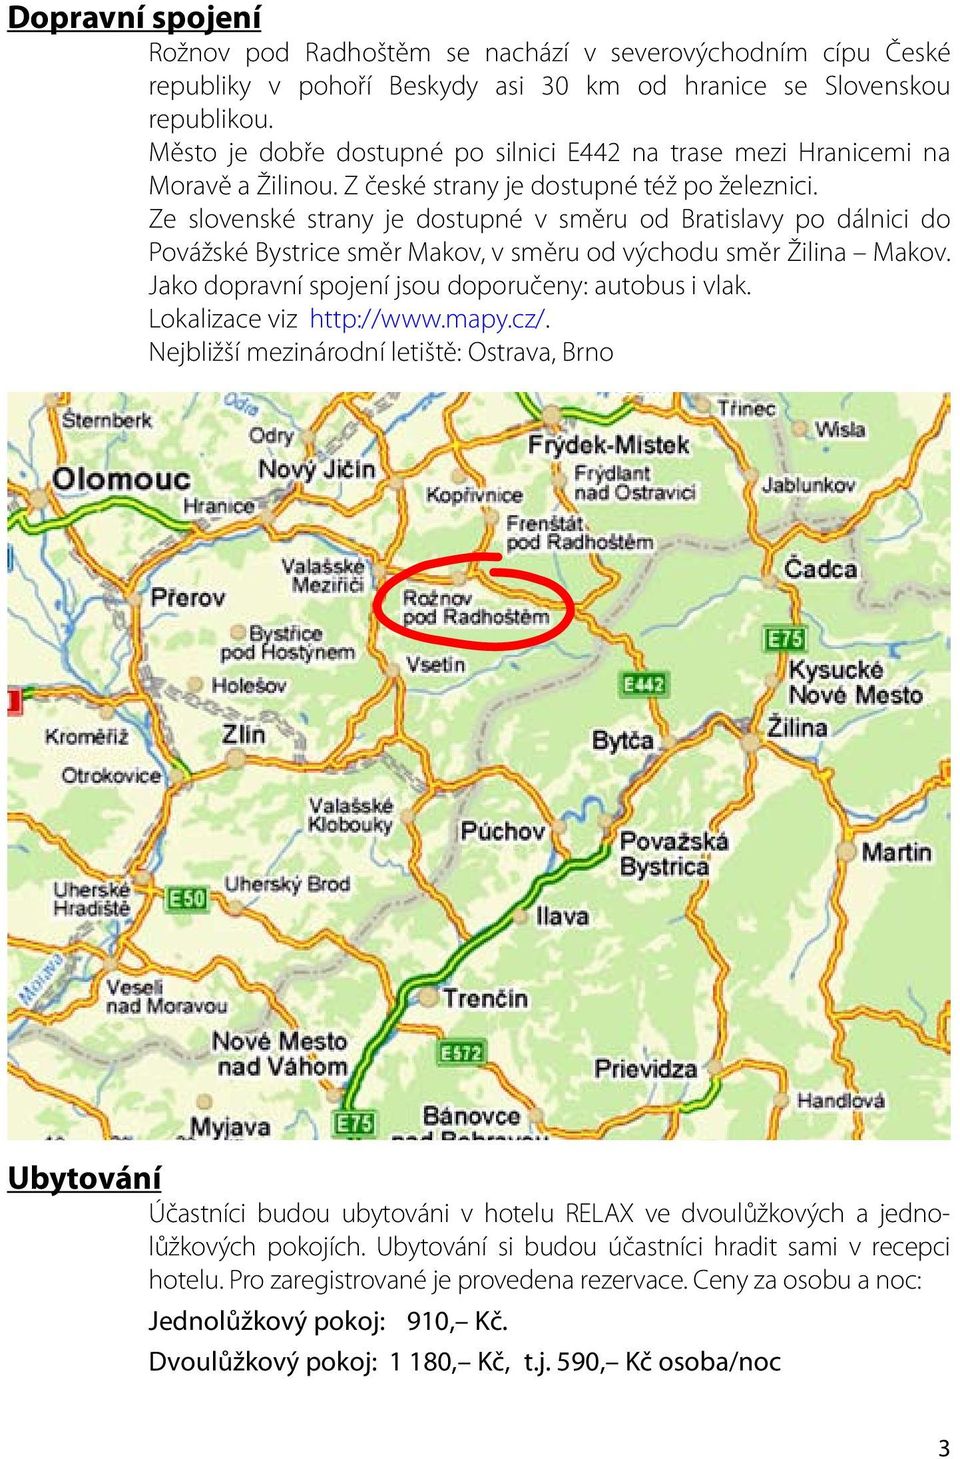 Ze slovenské strany je dostupné v směru od Bratislavy po dálnici do Povážské Bystrice směr Makov, v směru od východu směr Žilina Makov. Jako dopravní spojení jsou doporučeny: autobus i vlak.